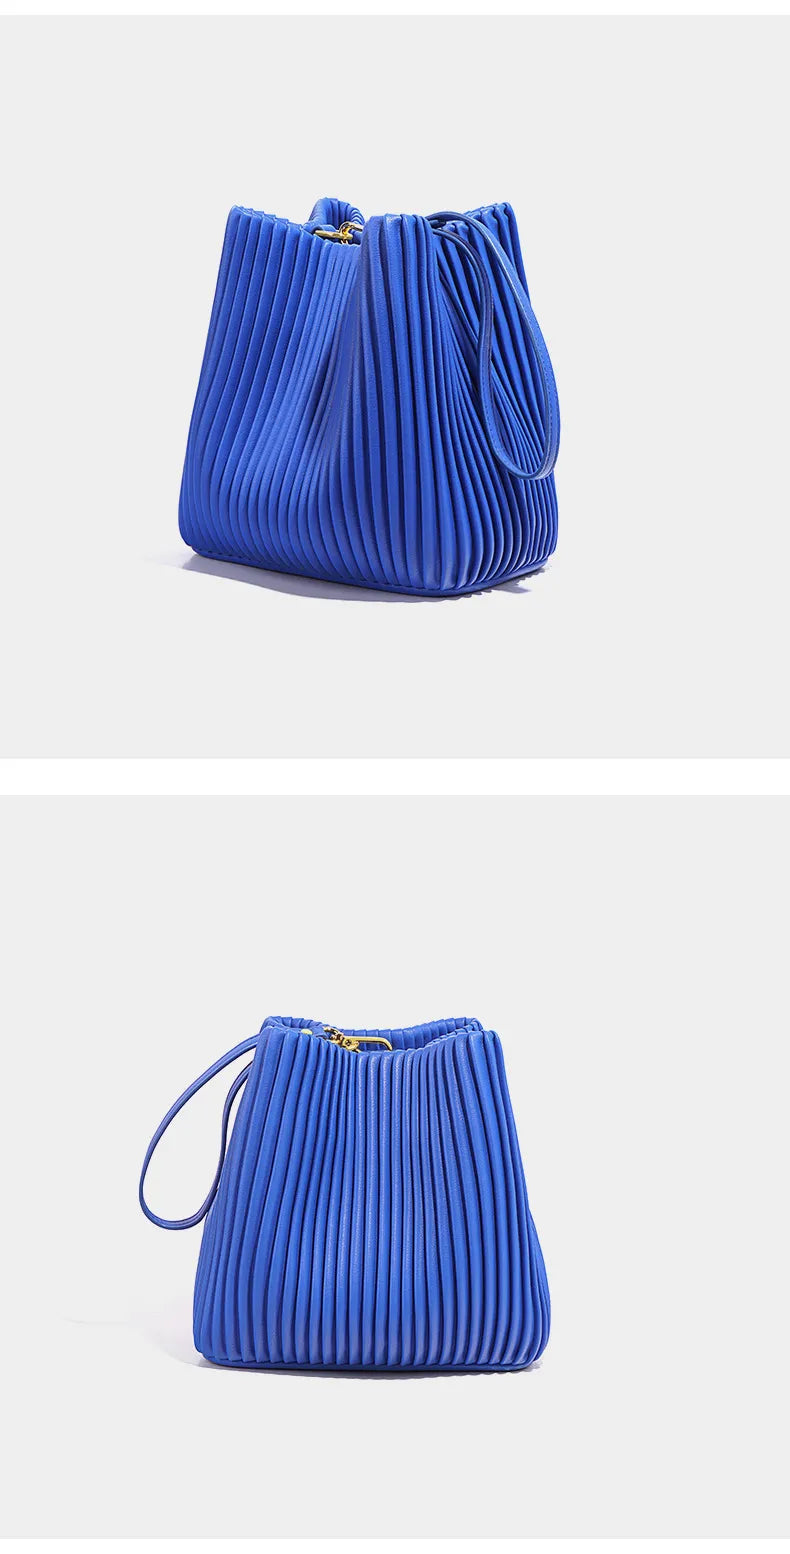 sac bandouliere luxe bleu electrique